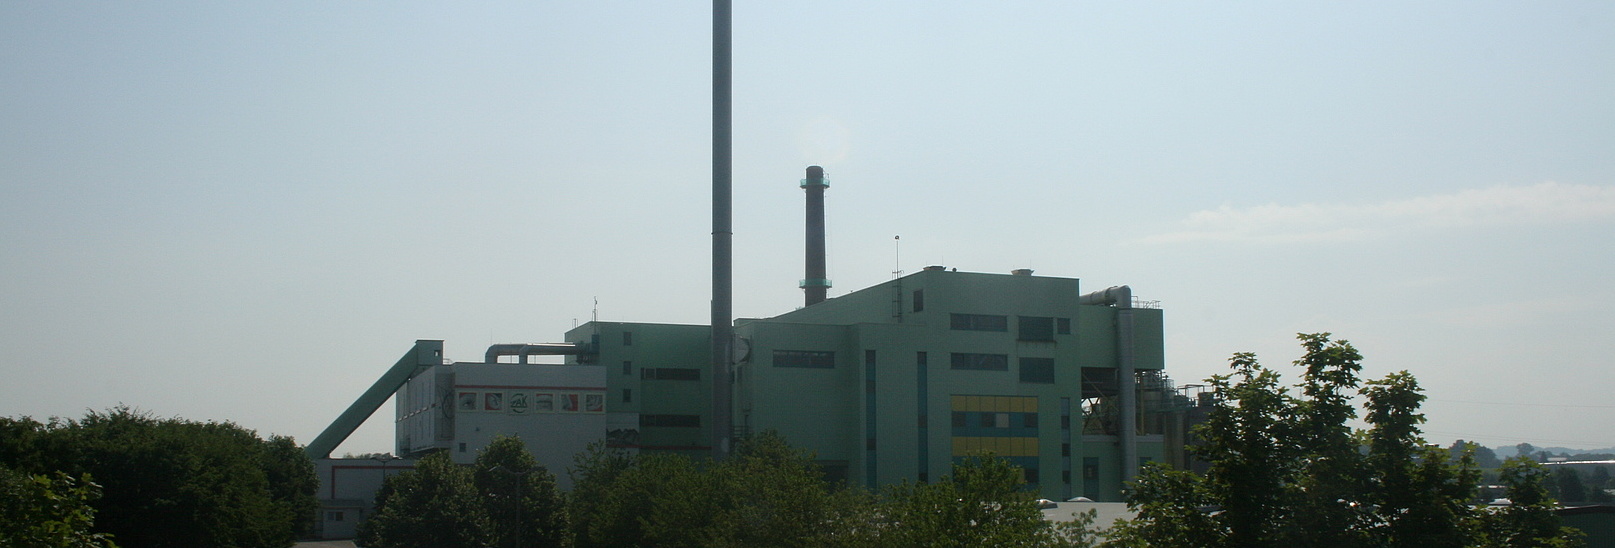 Gesamtaufnahme des Müllheizkraftwerkes in Kempten